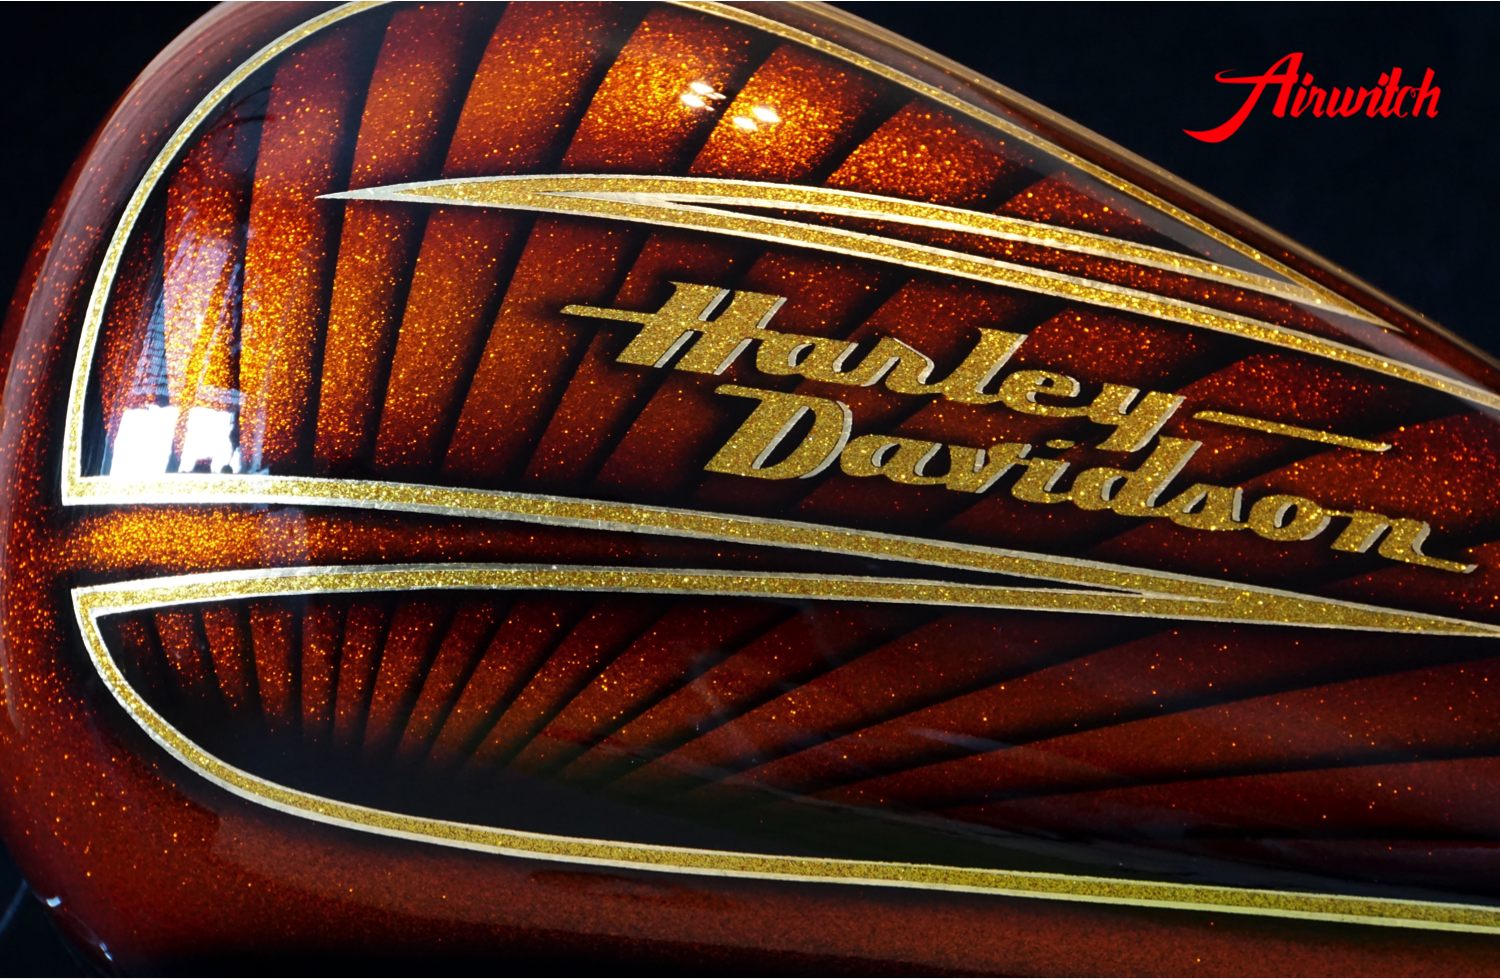 Luxuriöses Tankdesign einer Harley Davidson Tank mit goldenen Metalflakes und Blattgold